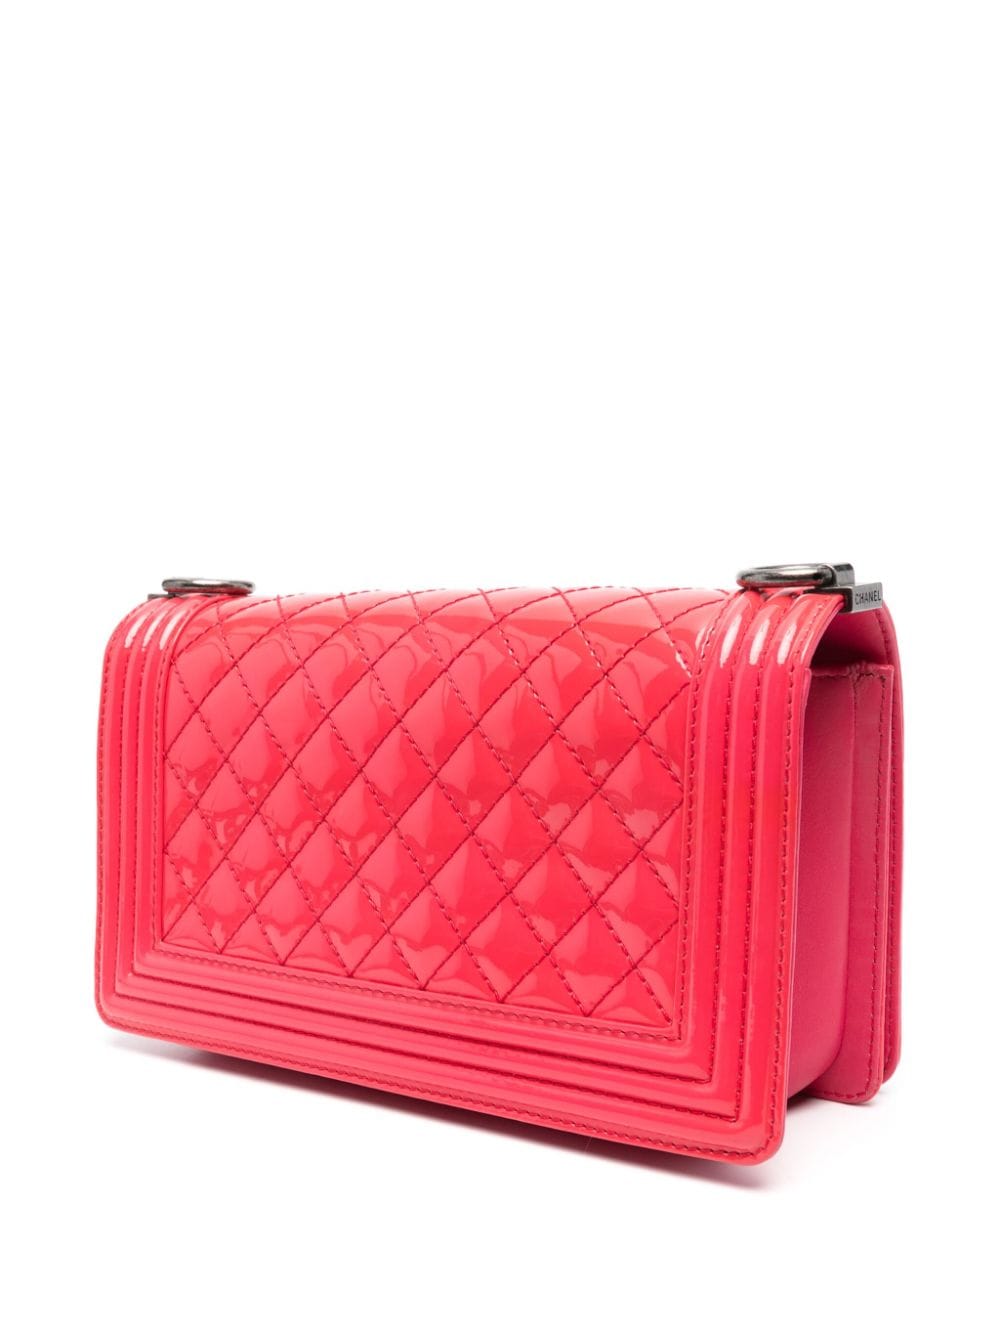 Pre-owned Chanel 2011 Boy Medium Shoulder Bag In Pink